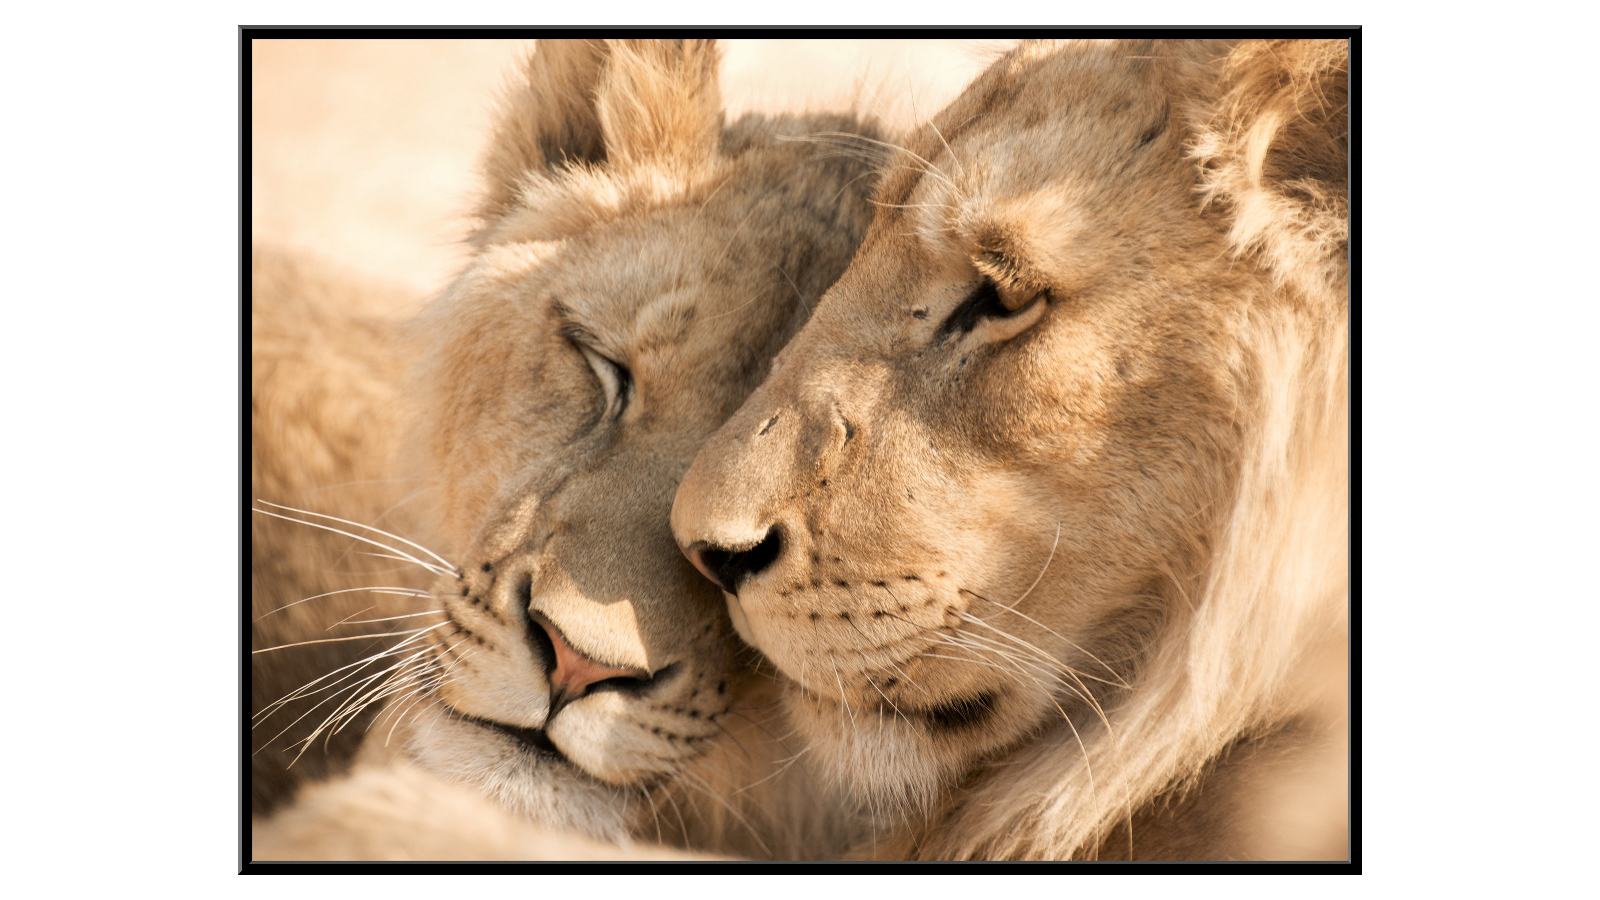 Cuddling lion pair